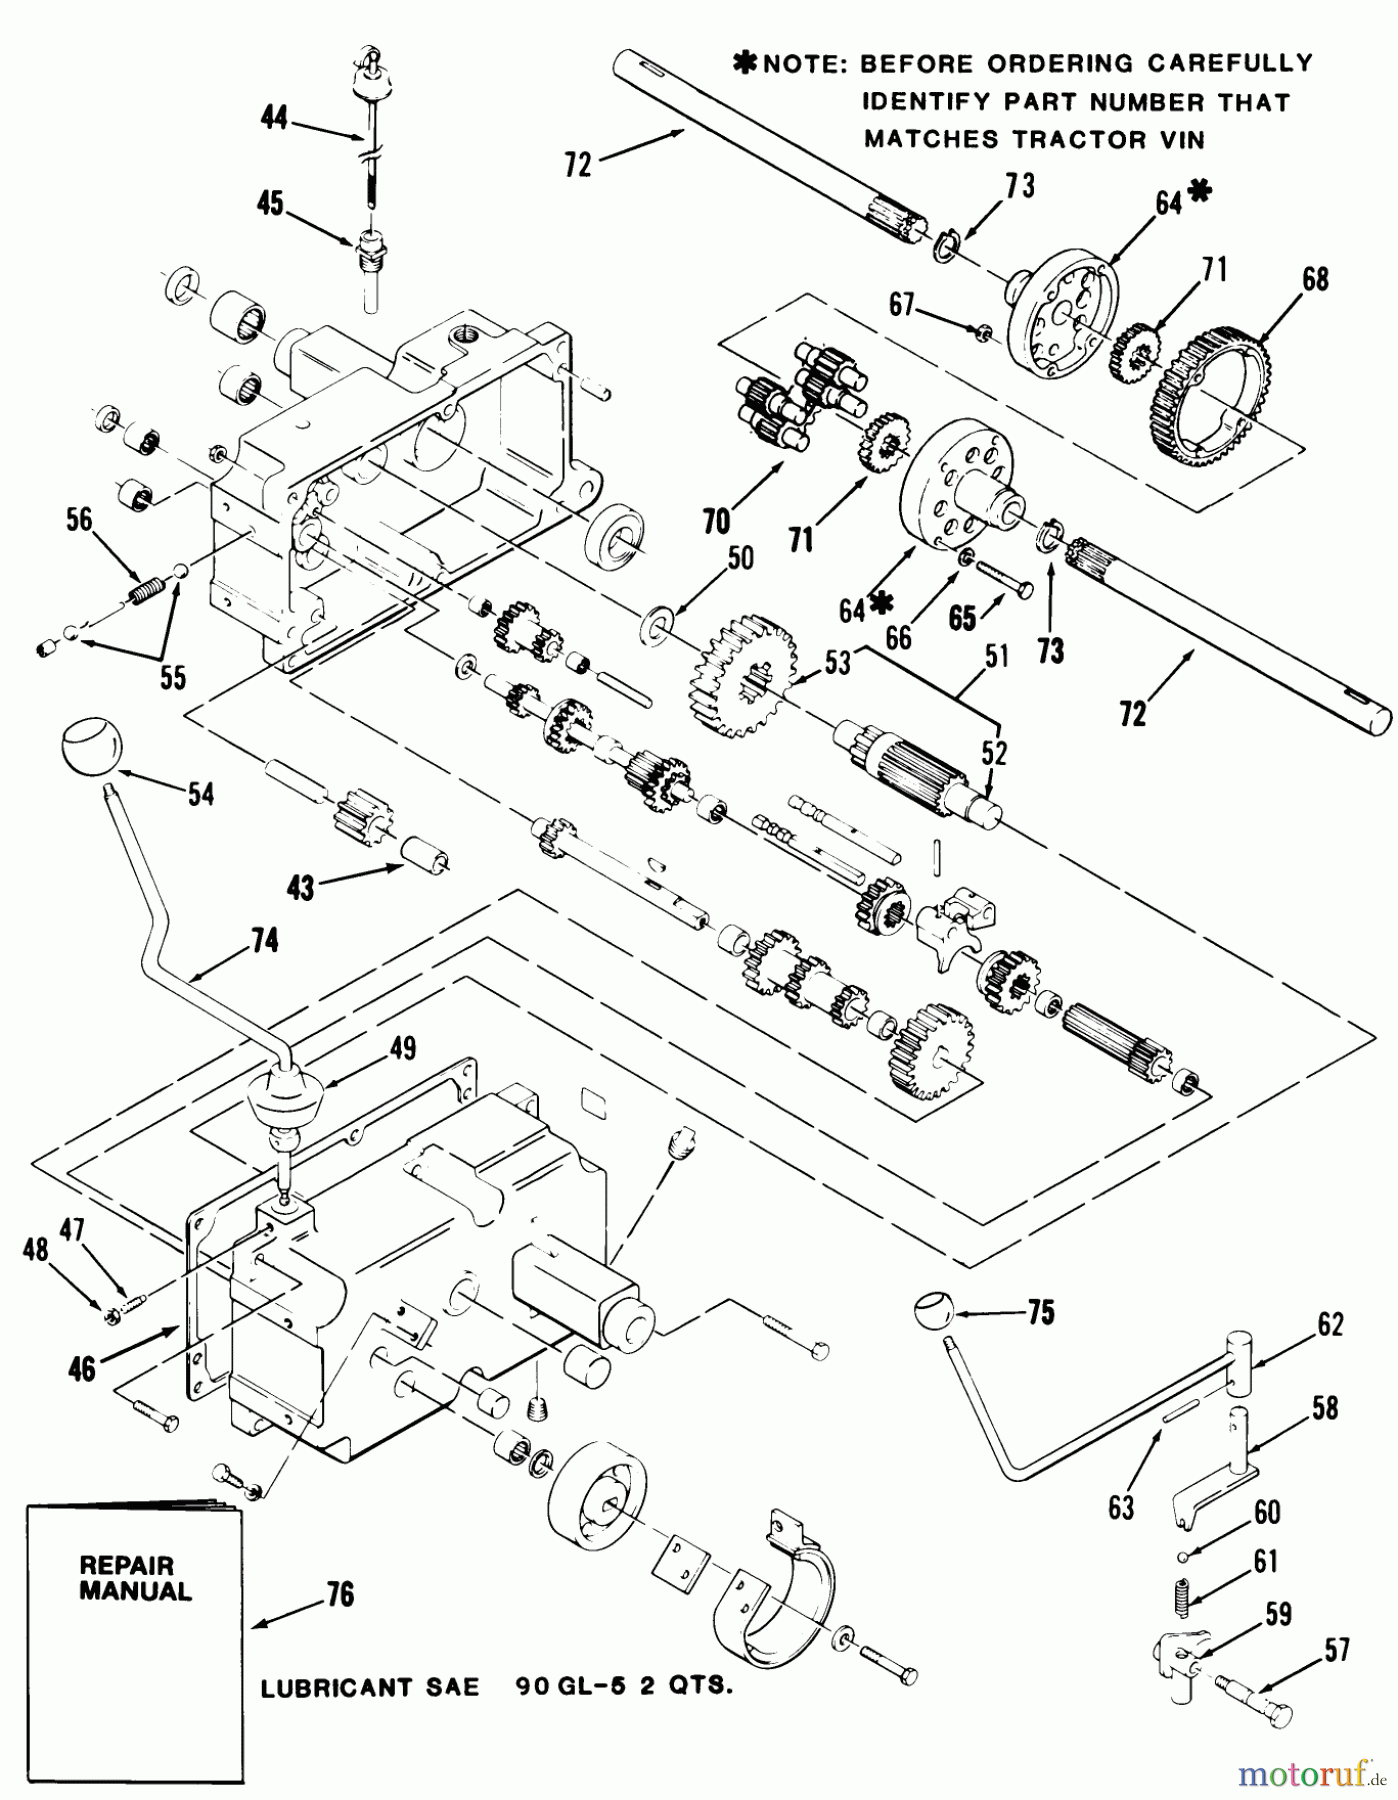  Toro Neu Mowers, Lawn & Garden Tractor Seite 1 21-12K803 (312-8) - Toro 312-8 Garden Tractor, 1986 MECHANICAL TRANSMISSION-8-SPEED #2